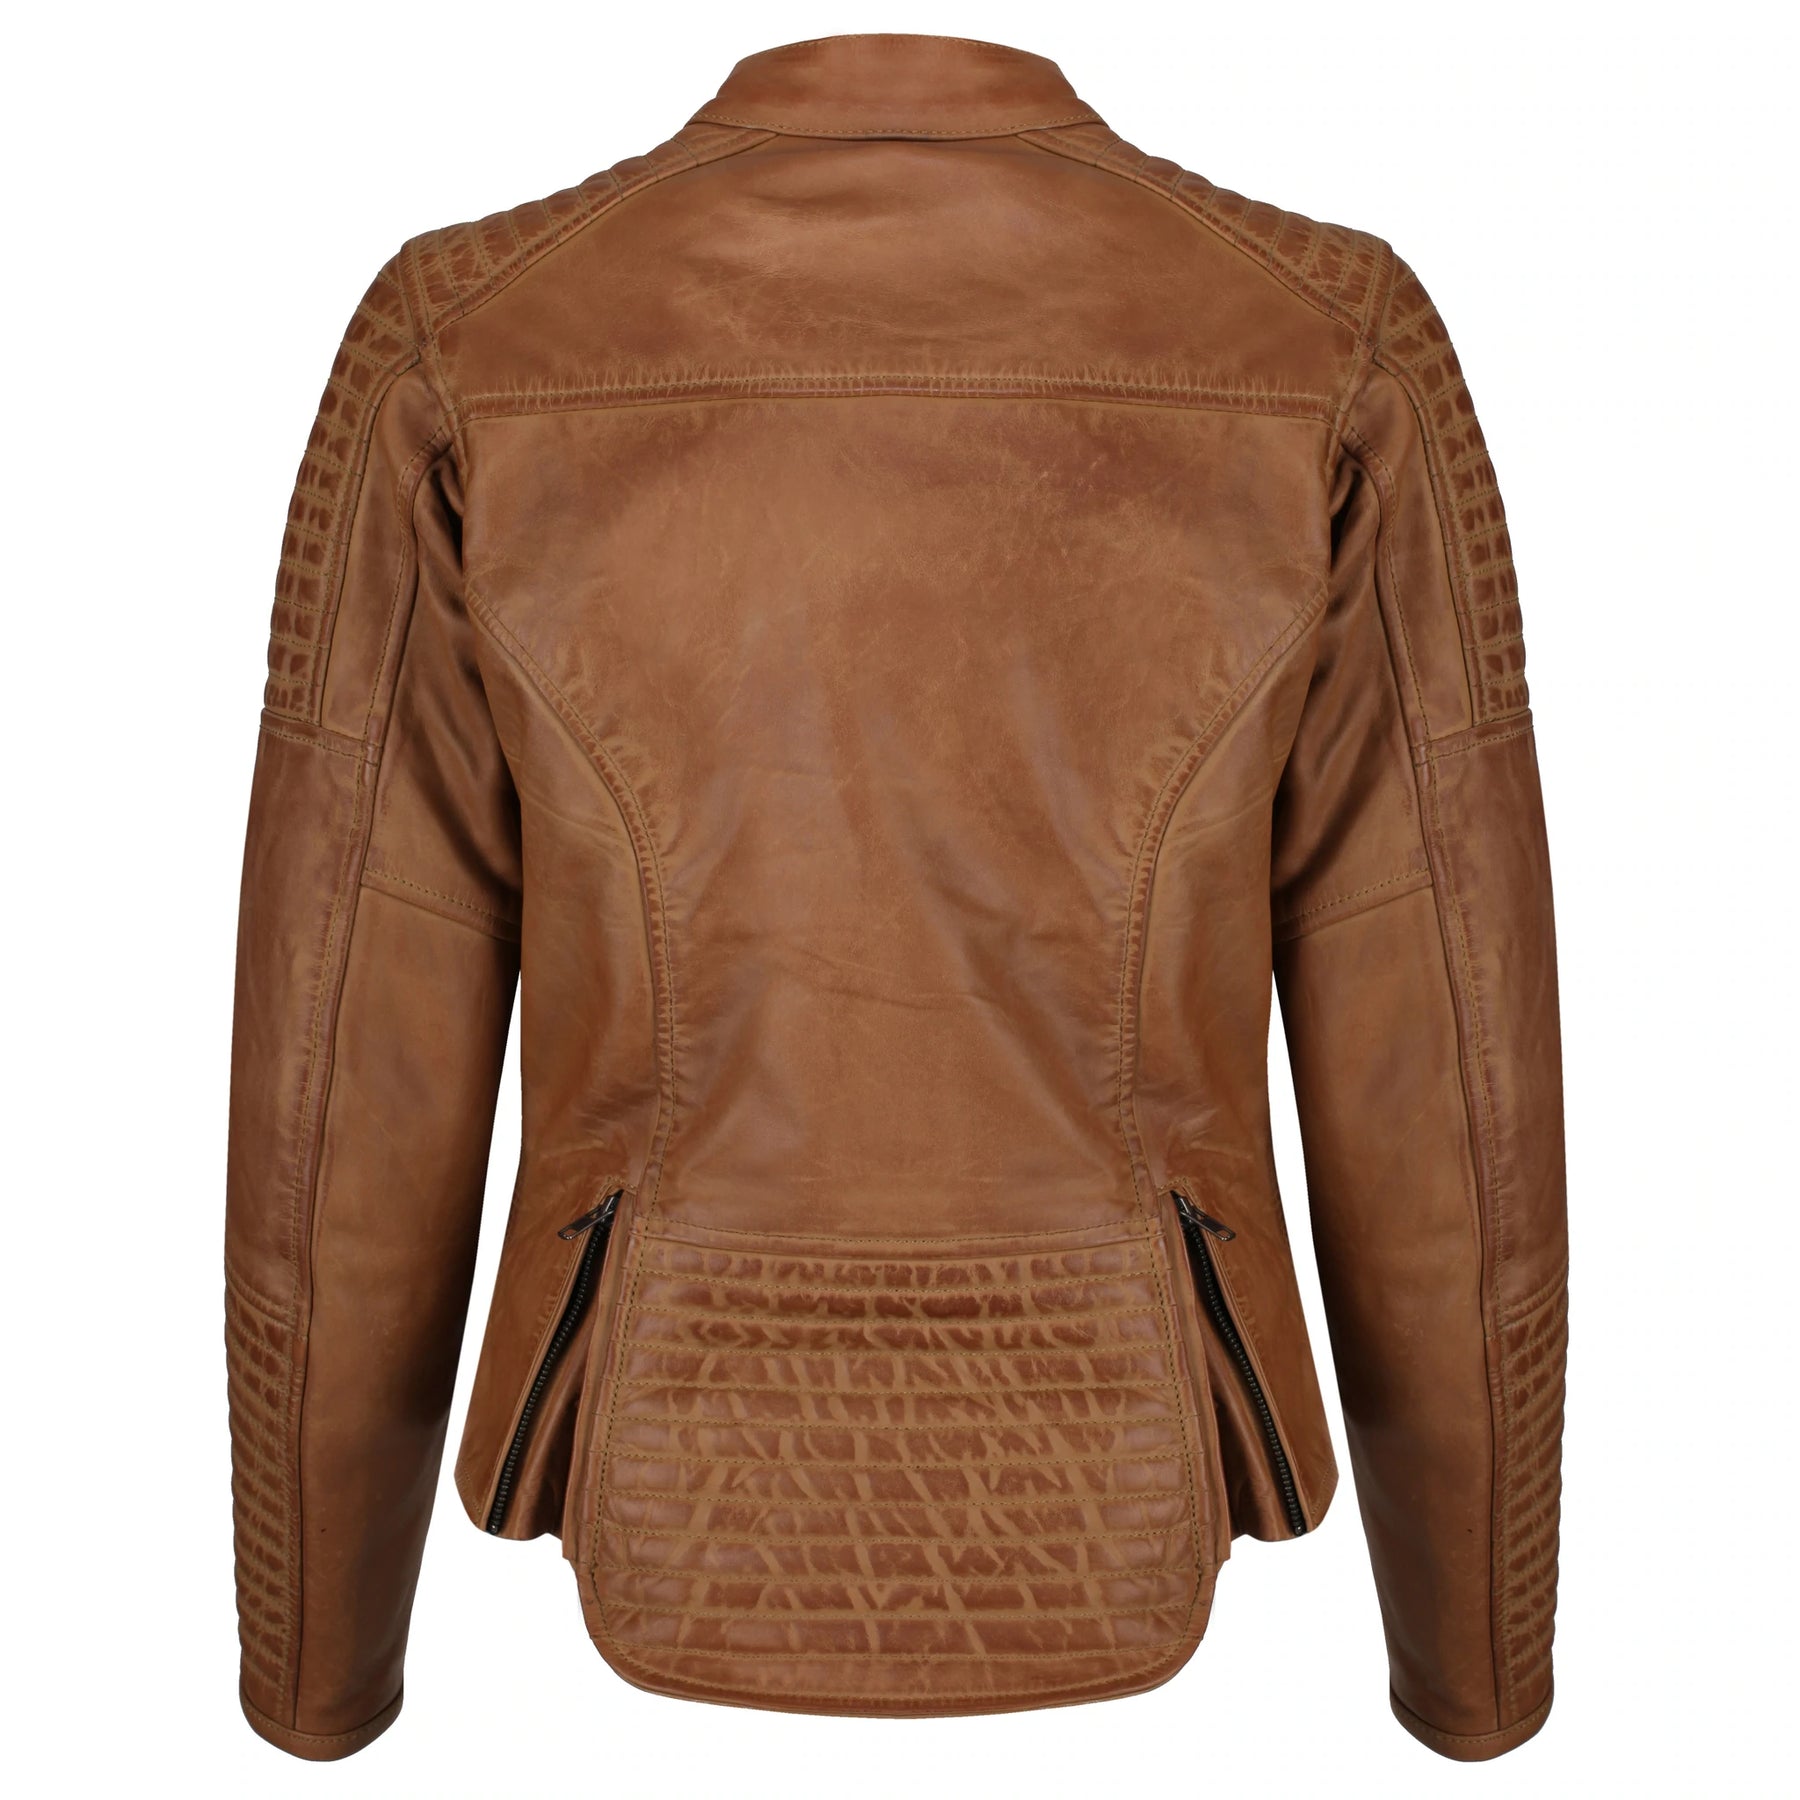 Motogirl Valerie Camel Leather Jacket